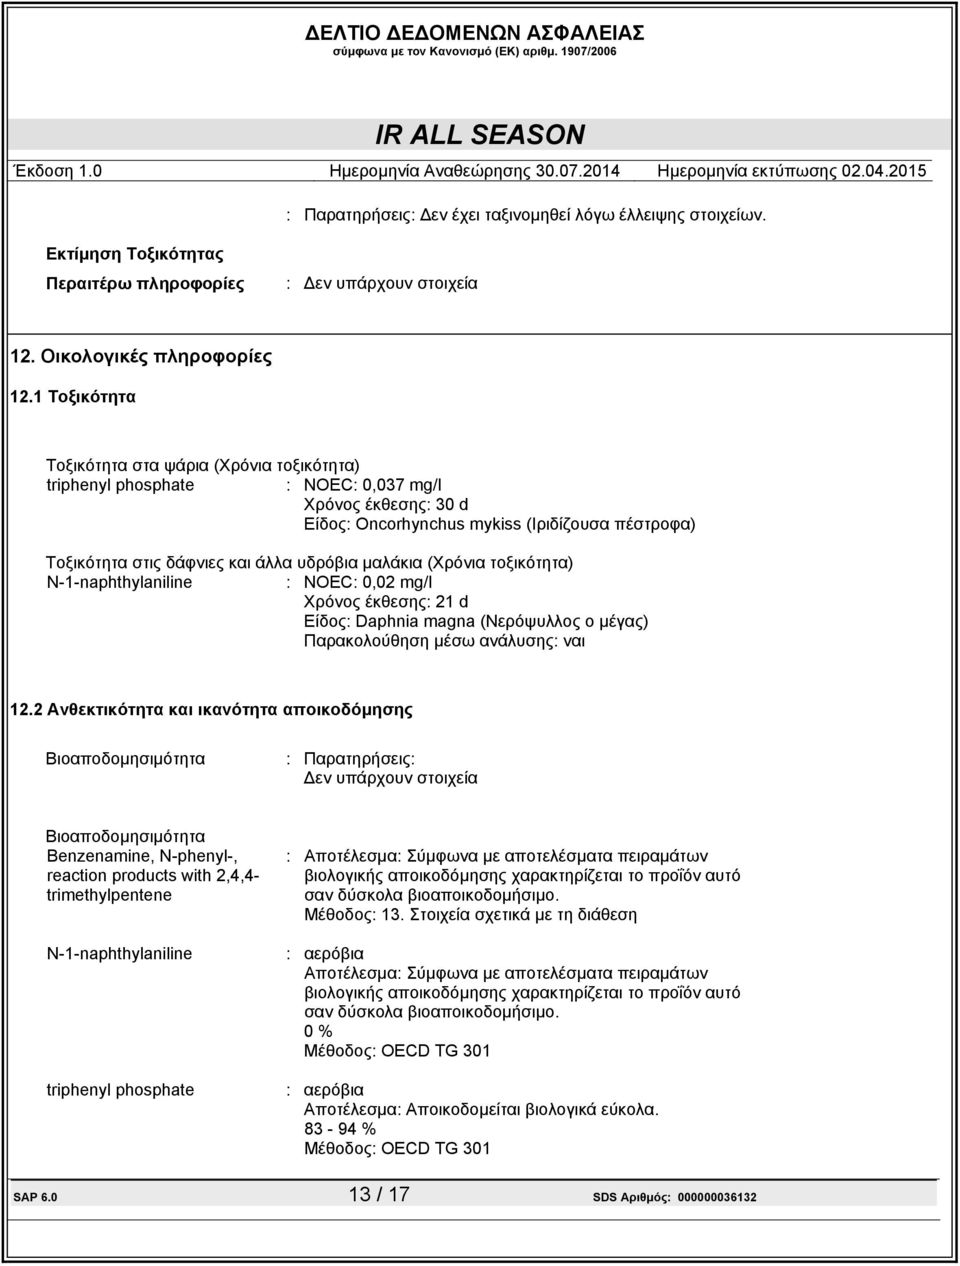 τοξικότητα) : NOEC: 0,02 mg/l Χρόνος έκθεσης: 21 d Είδος: Daphnia magna (Νερόψυλλος ο µέγας) Παρακολούθηση µέσω ανάλυσης: ναι 12.